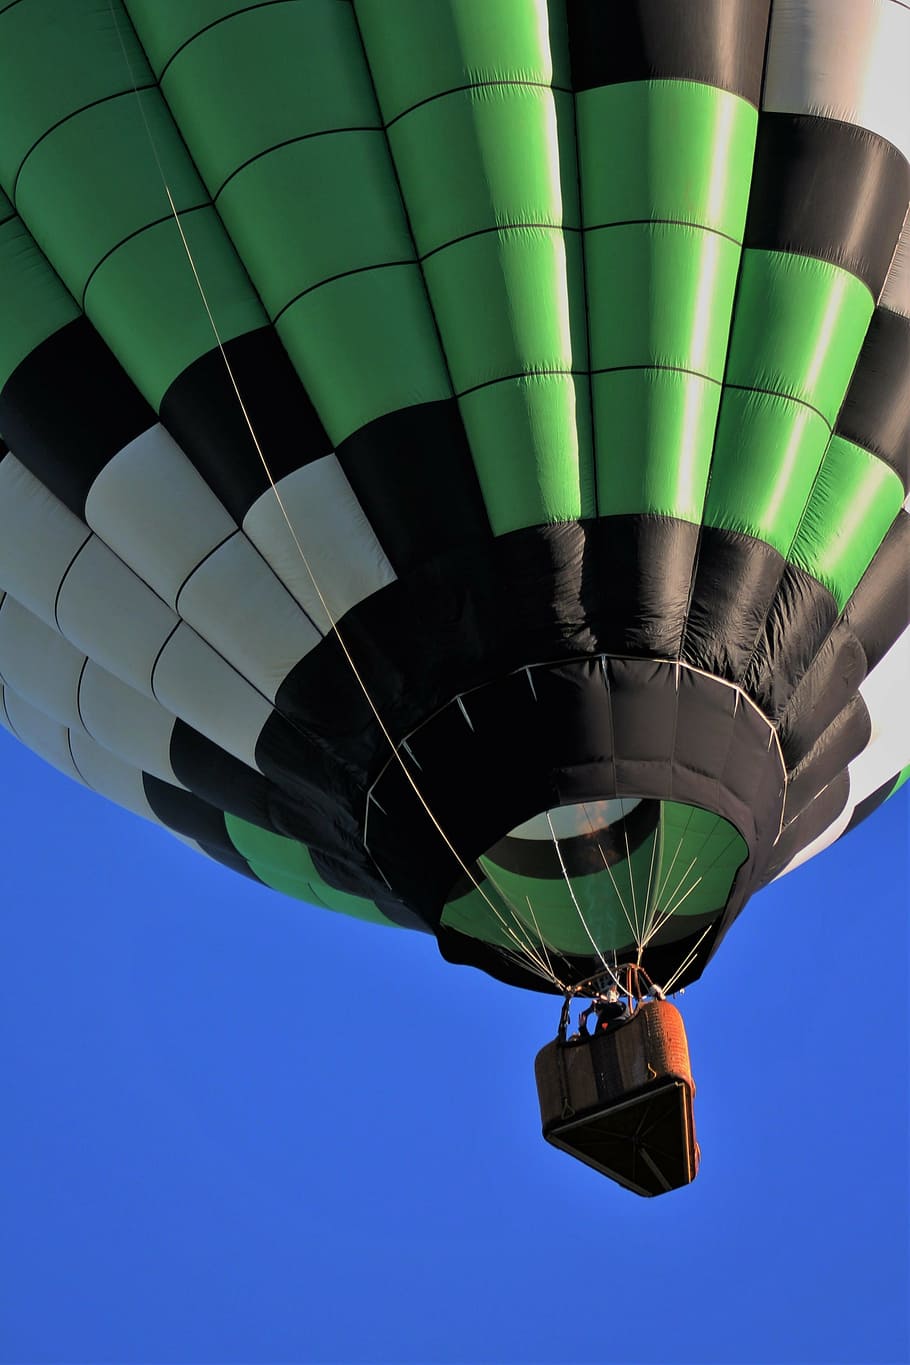 hot air balloon, albuquerque balloon fiesta, balloons, sky, colorful, blue, pattern, flight, travel, fun